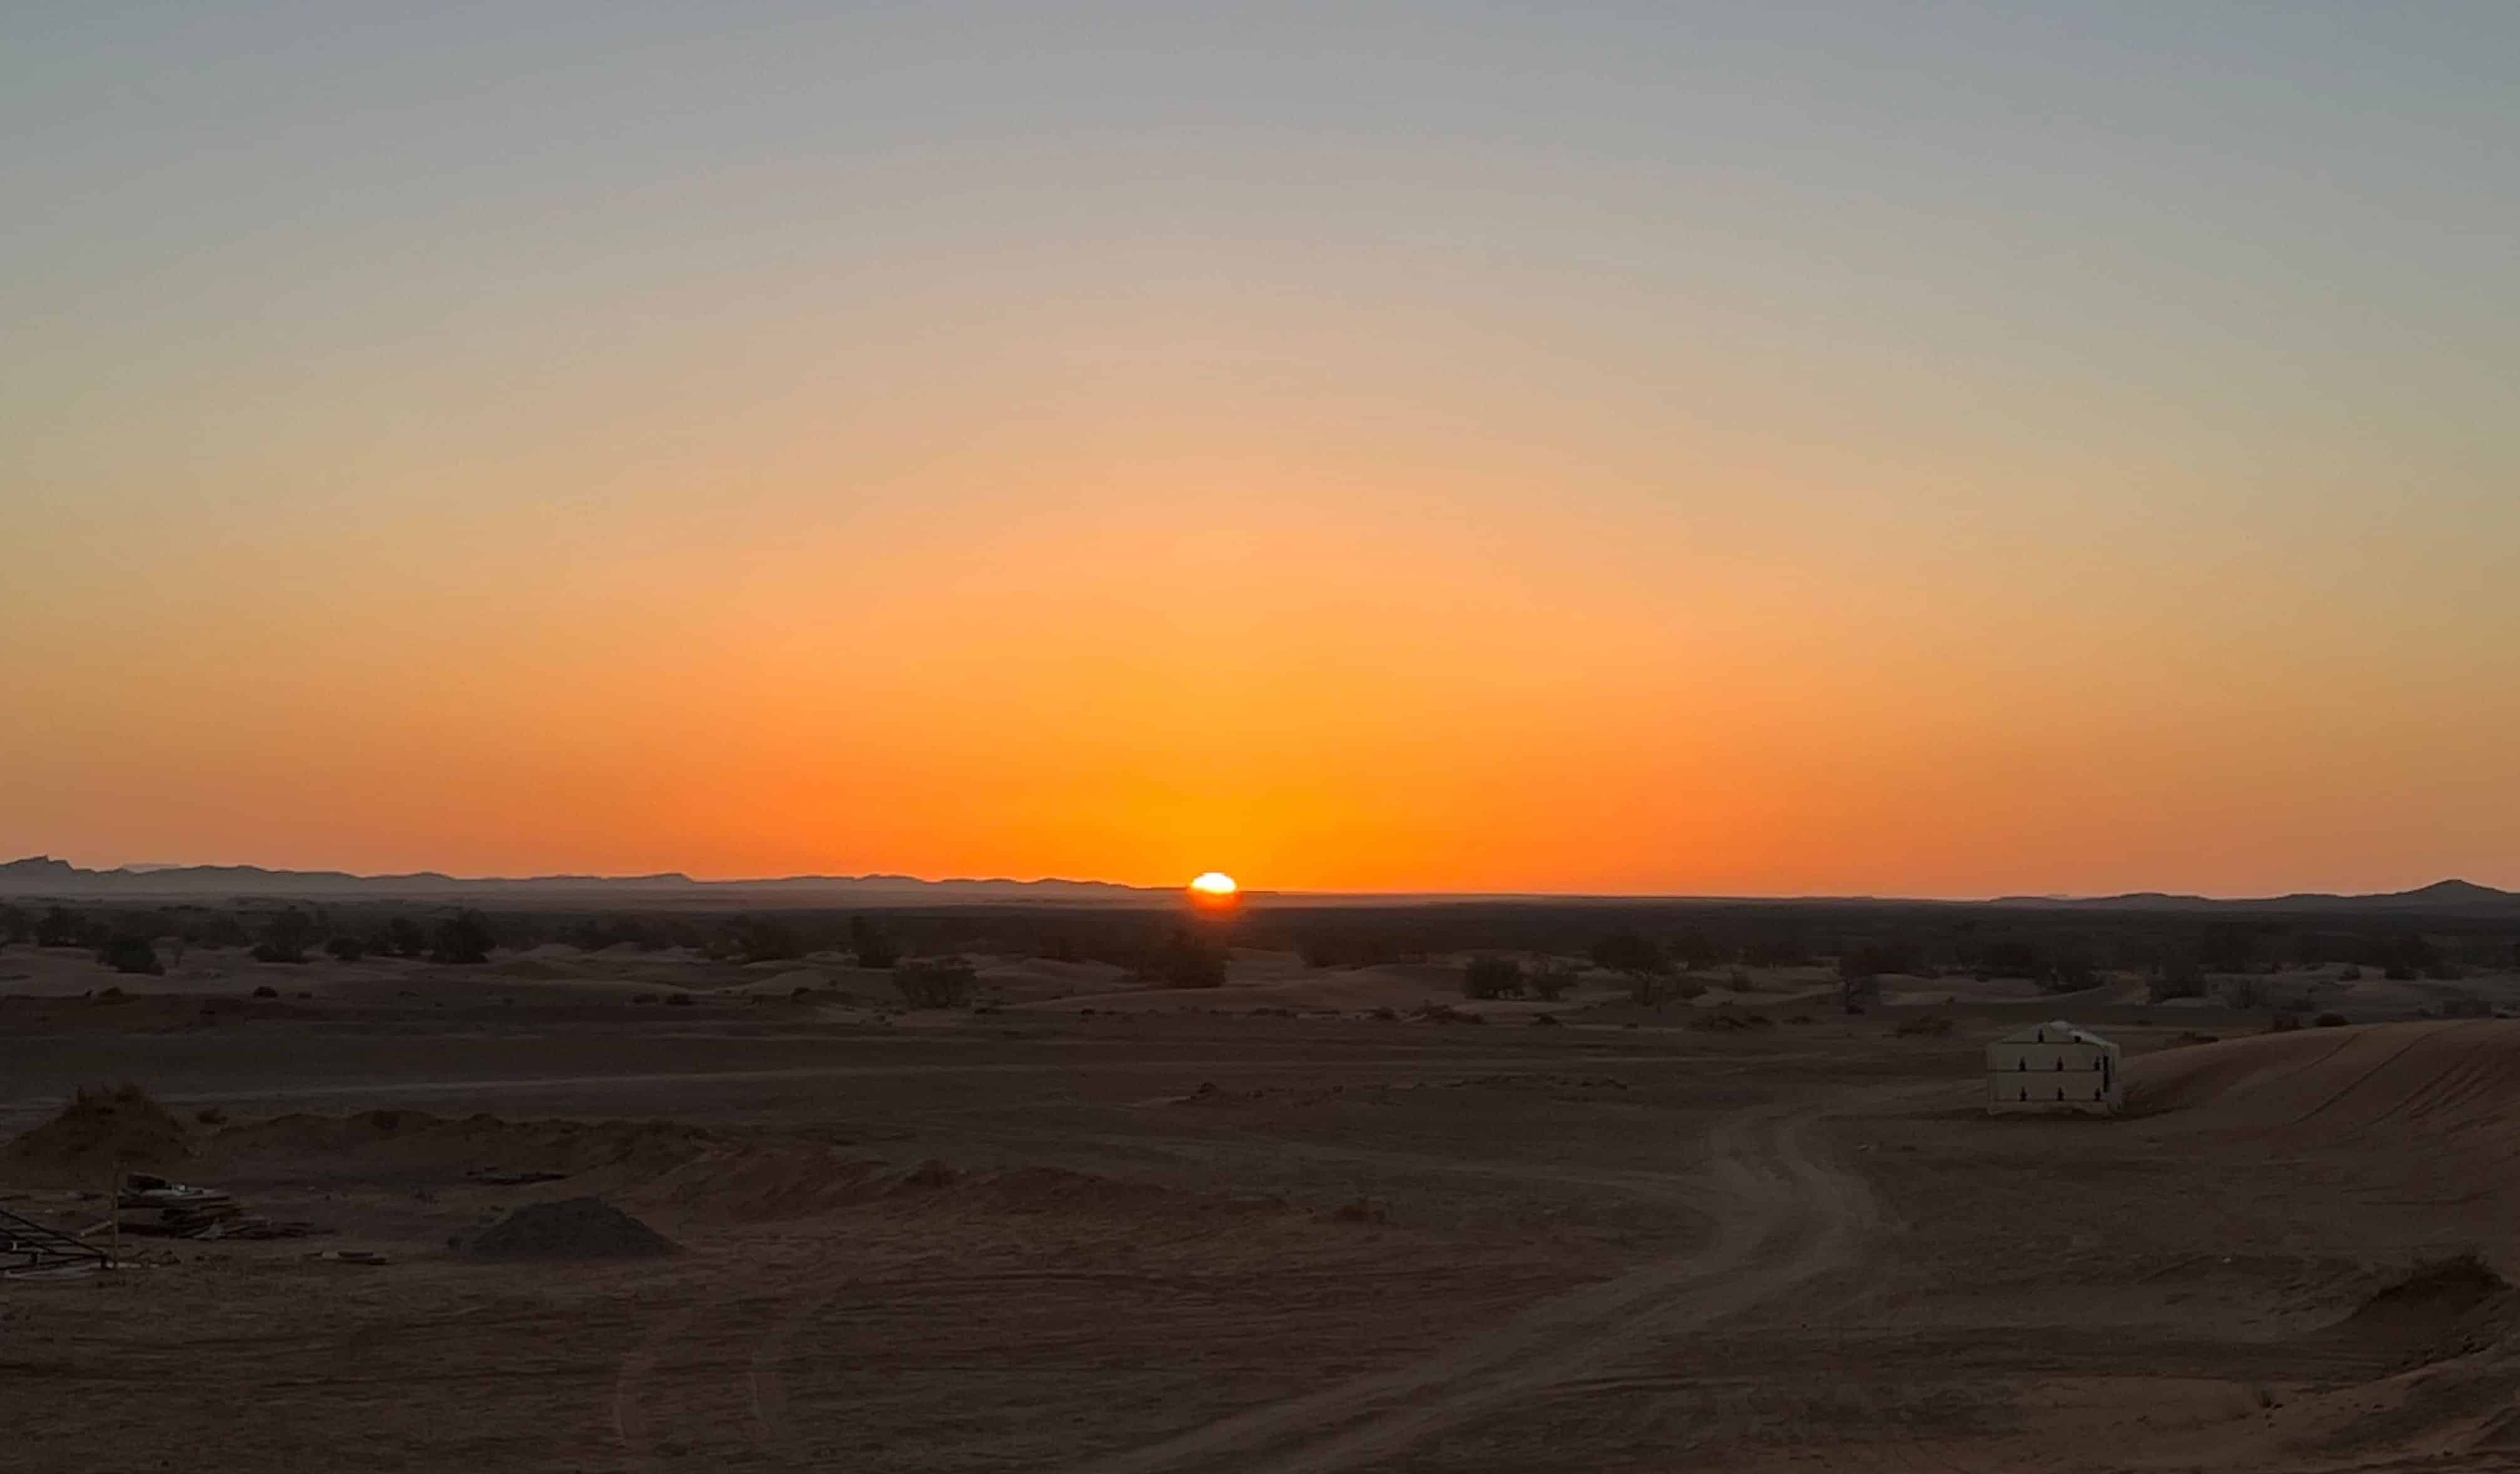 Dunas de areia vermelha cobrindo o horizonte no deserto marroquino ao pôr do sol